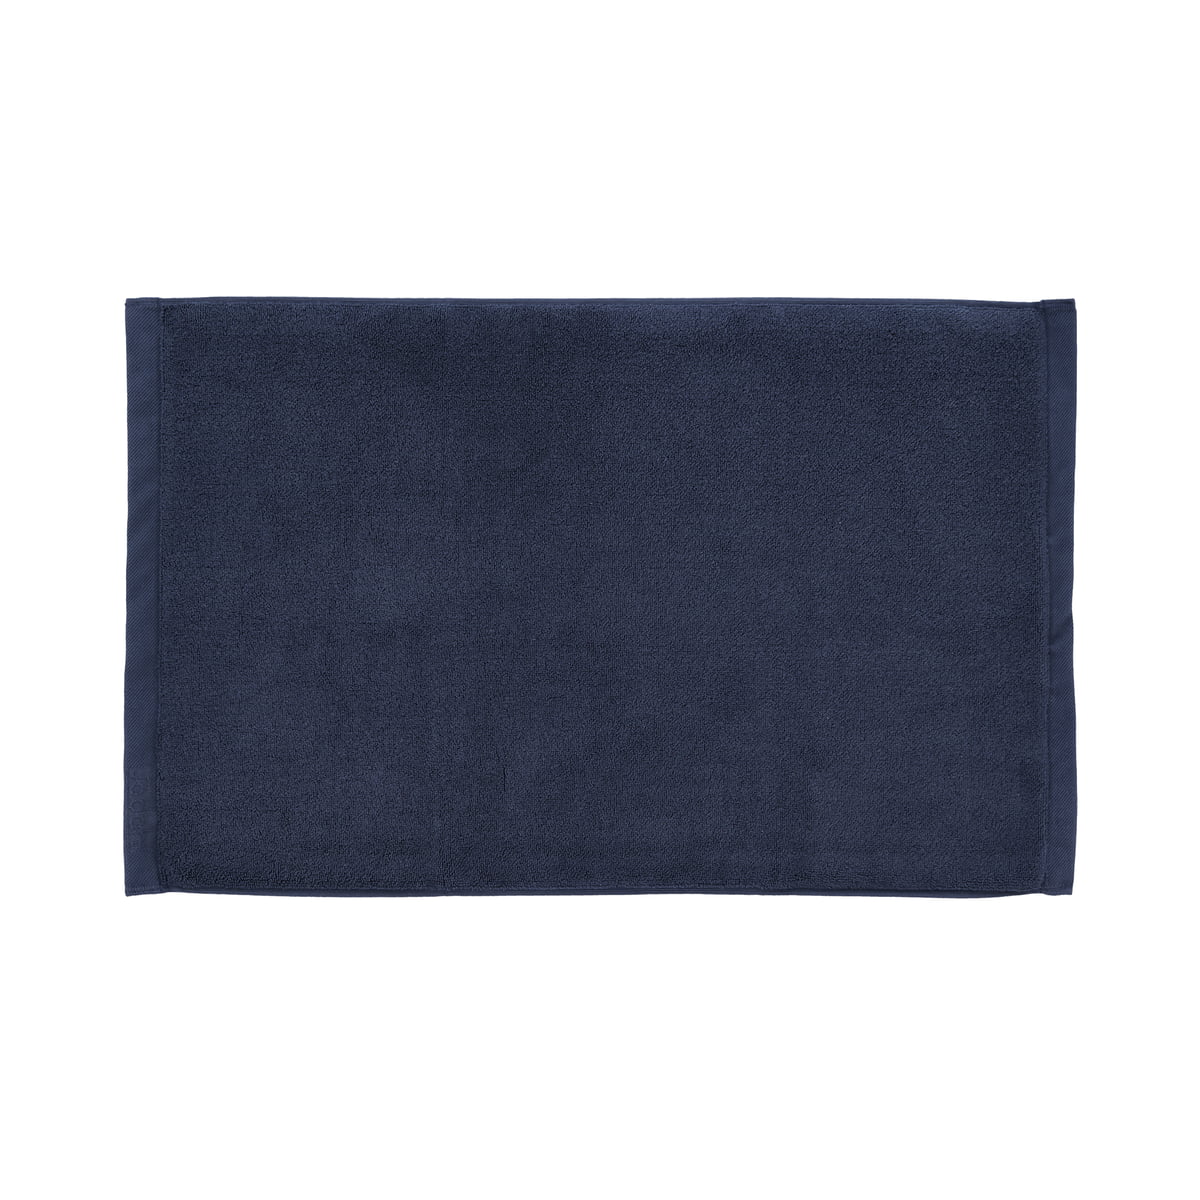 södahl - comfort tapis de bain, 50 x 80 cm, indigo